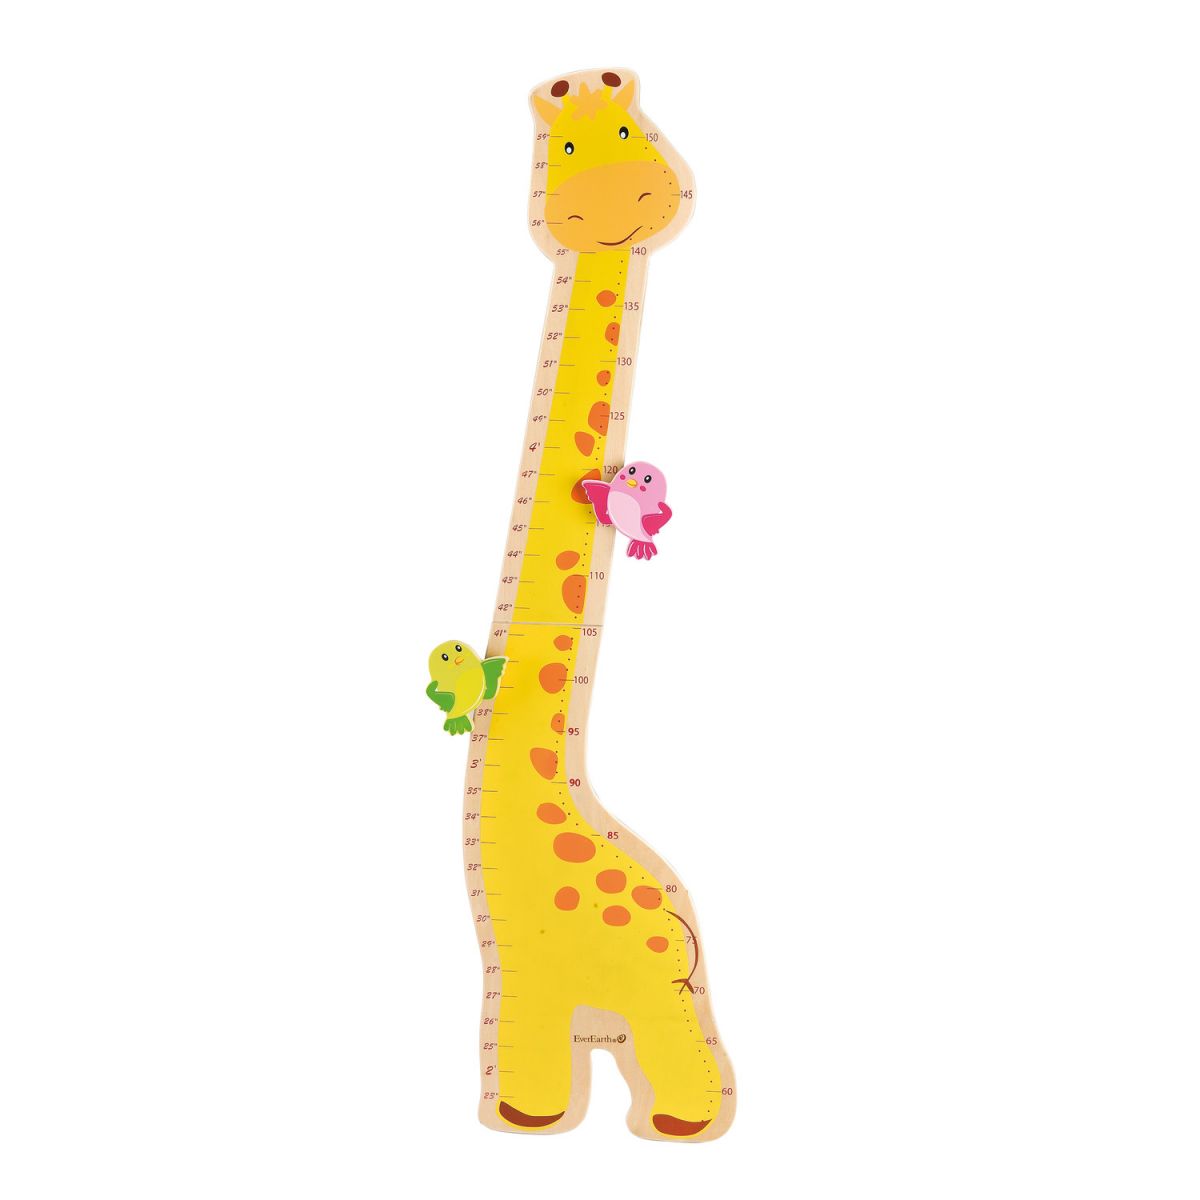 peluche girafe 1m50